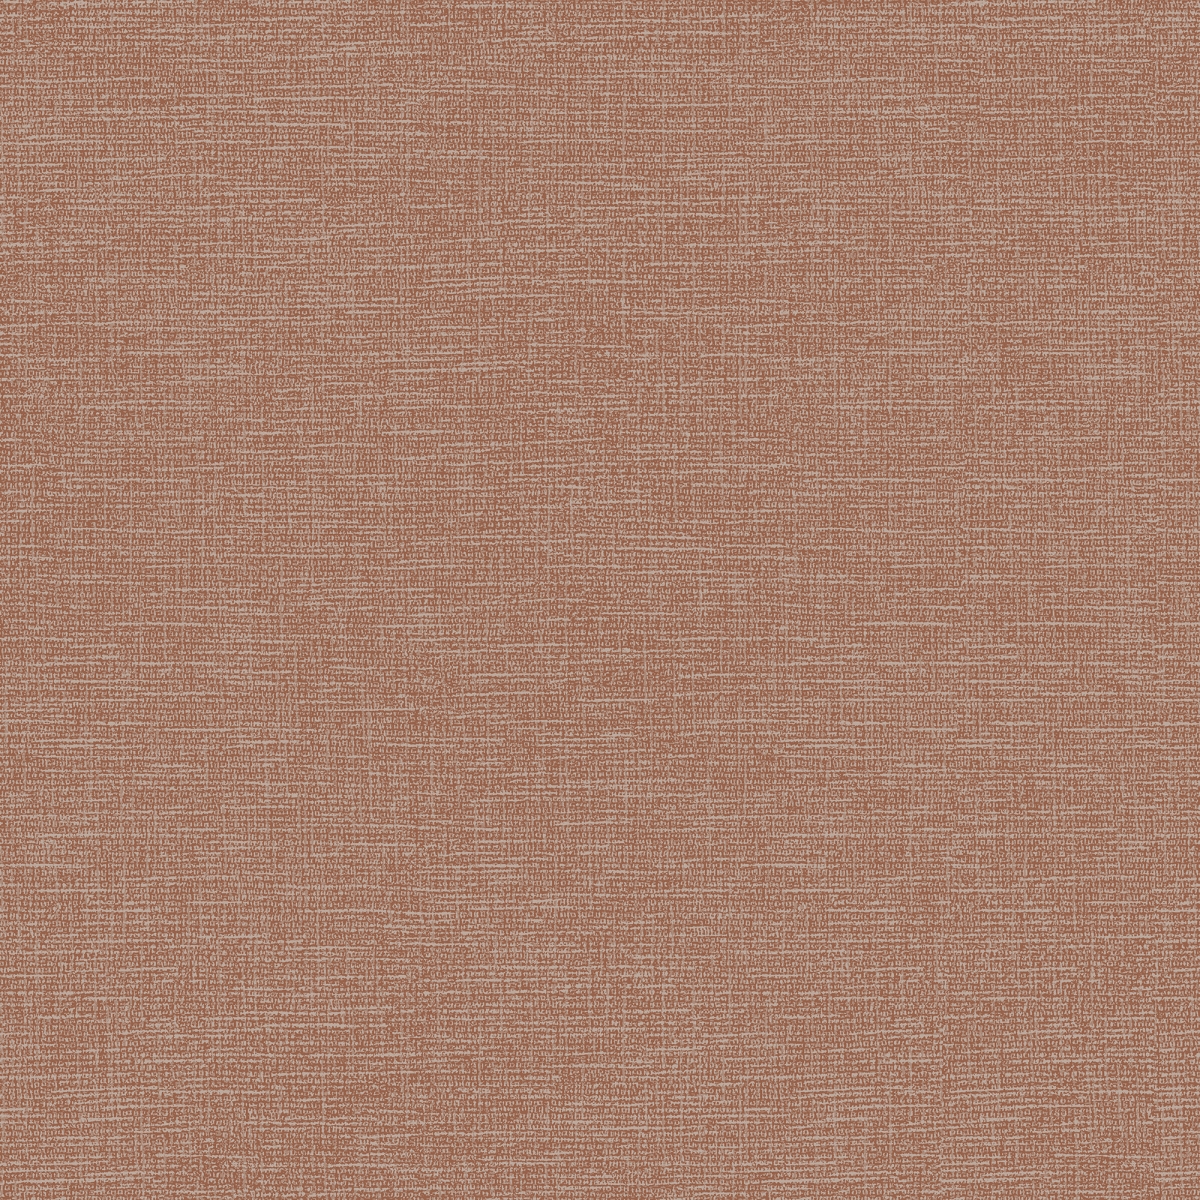 904302 Canvas Non-woven Wallpaper, Rust